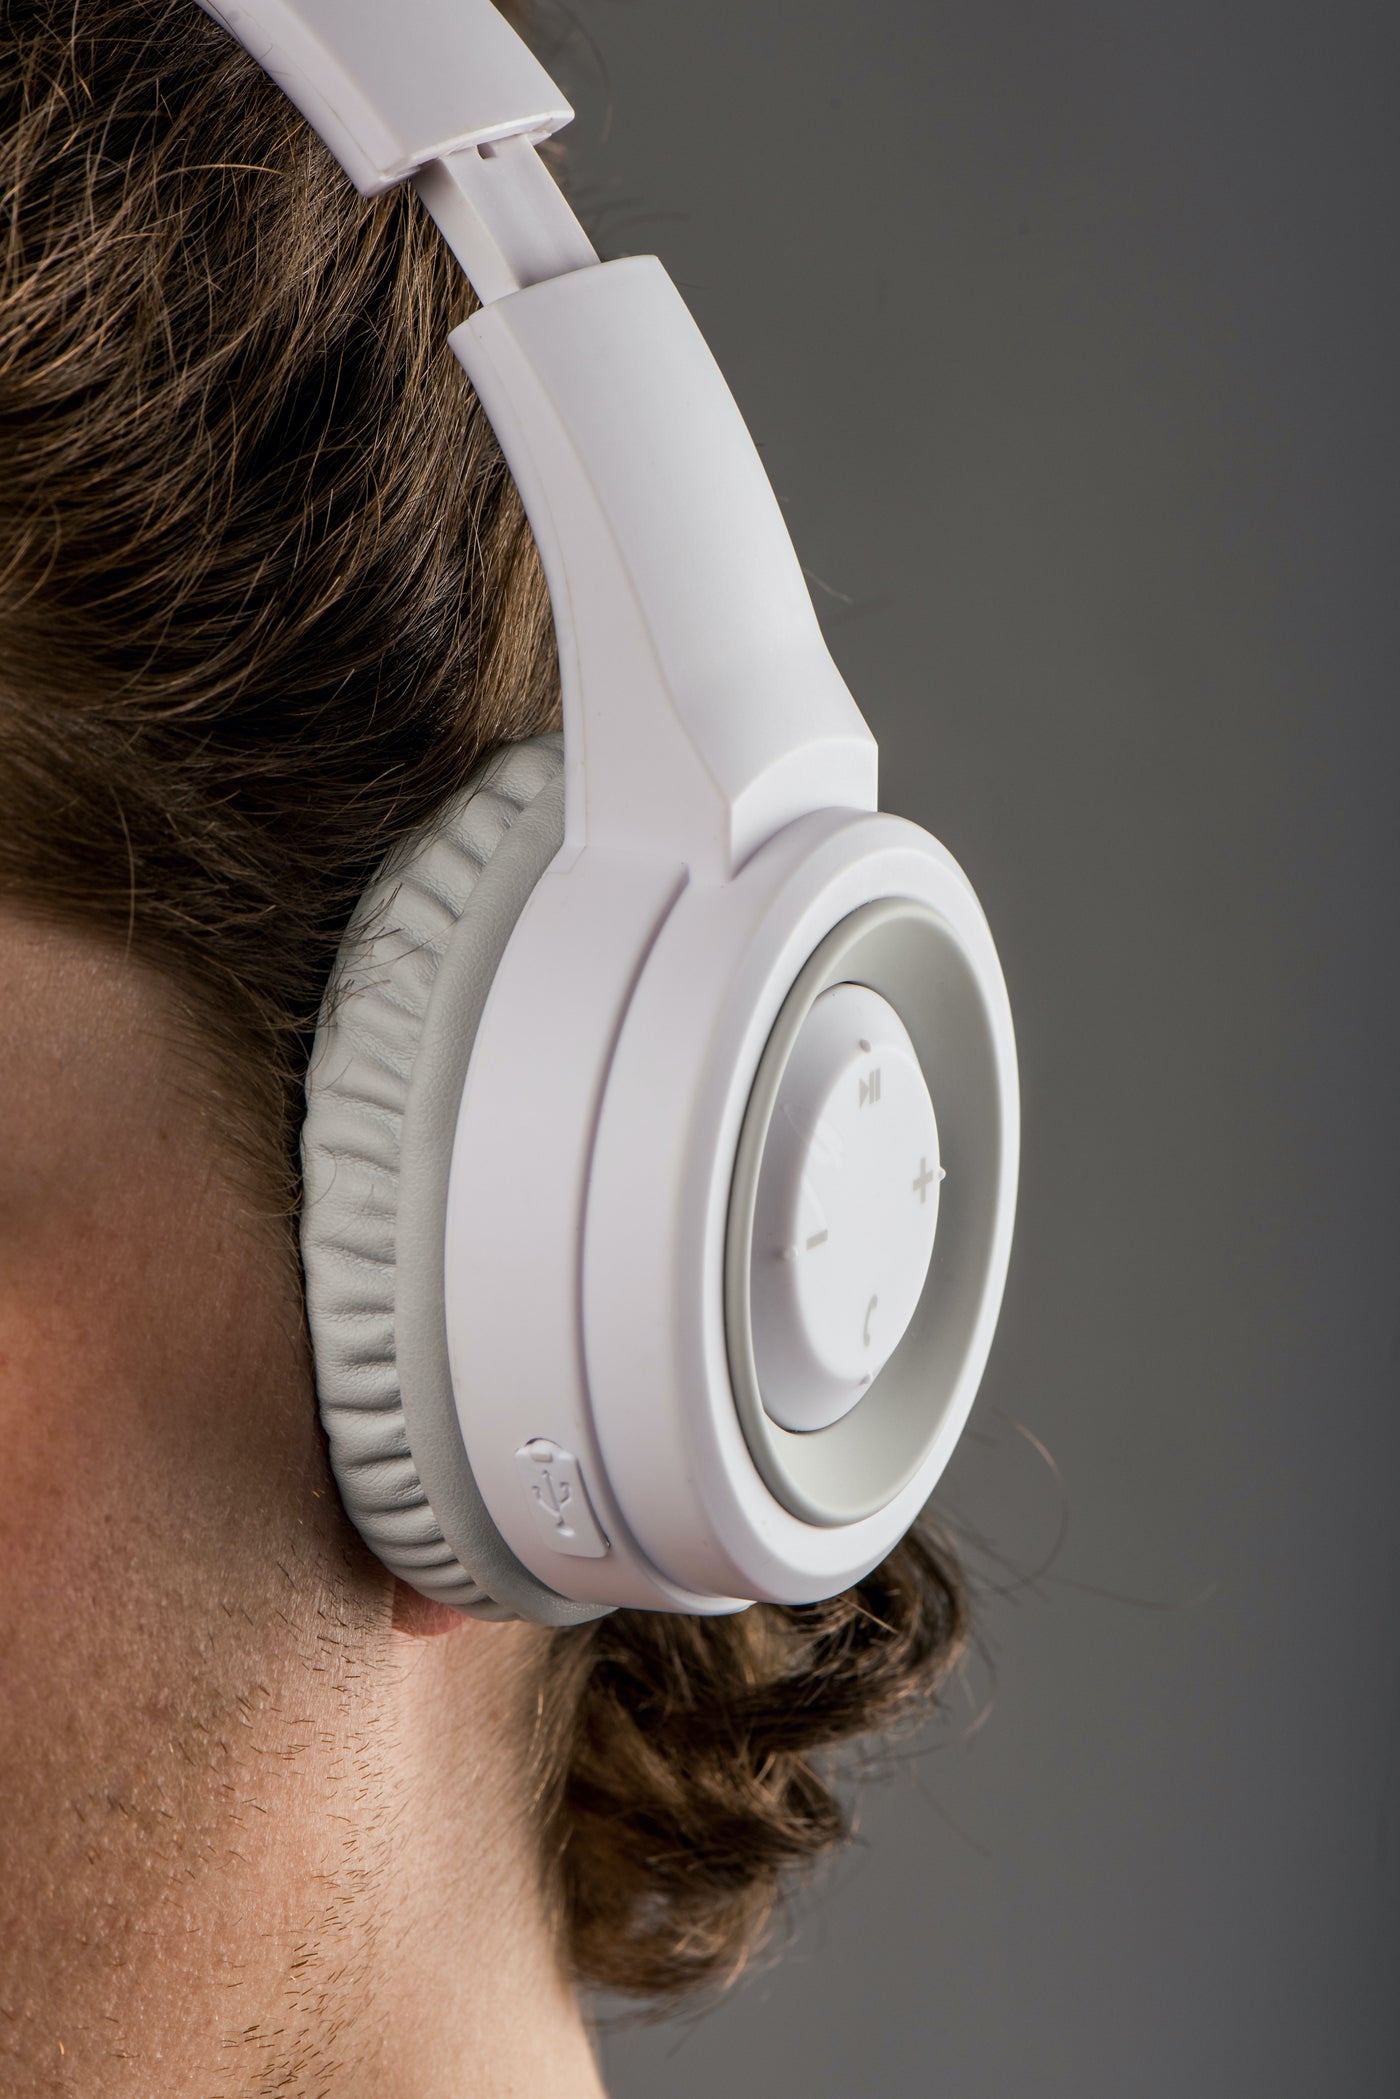 LENCO HPB-330WH - Słuchawki Bluetooth® - Bryzgoszczelne - Białe